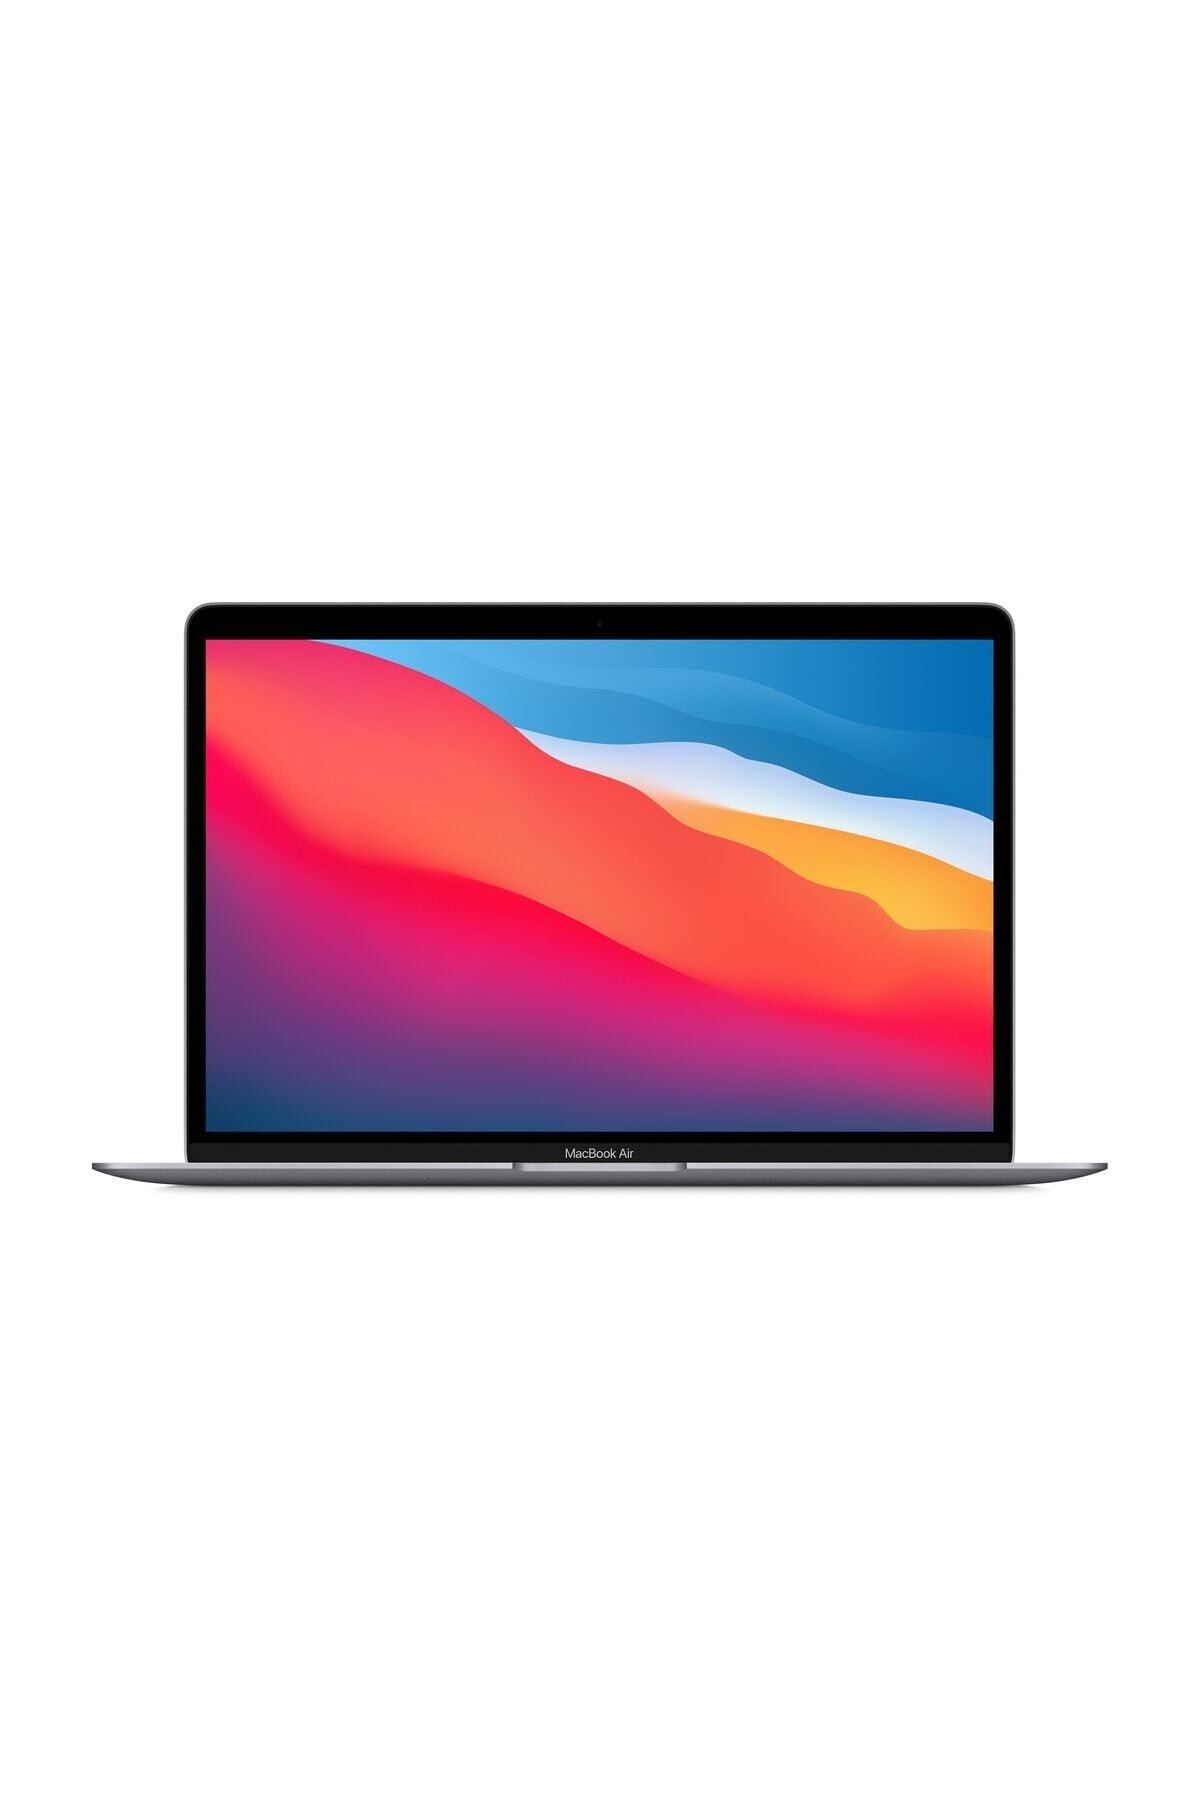 Apple Macbook Air M1 Çip 16gb 512gb Macos 13.3 Inç Qhd Taşınabilir Bilgisayar Uzay Grisi